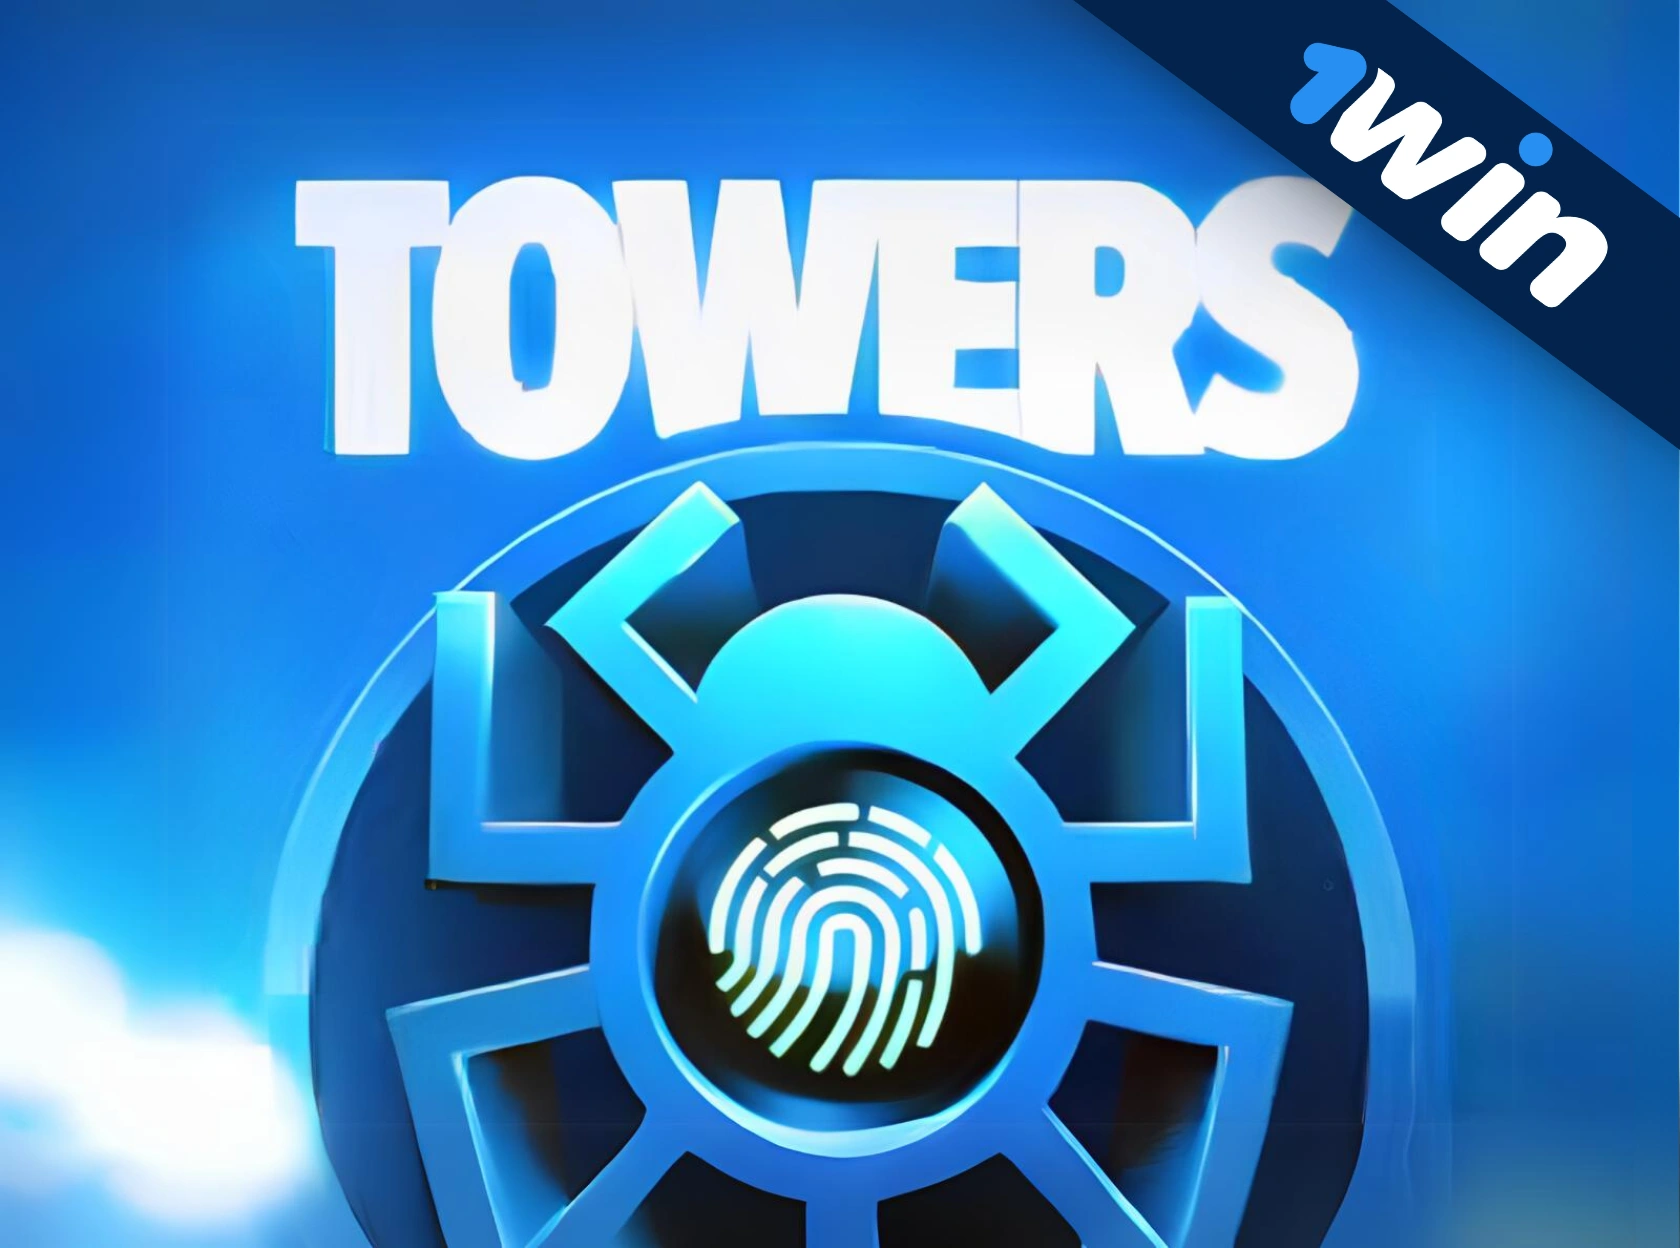 Towers 1win - पैसे के लिए खेल ऑनलाइन खेलना